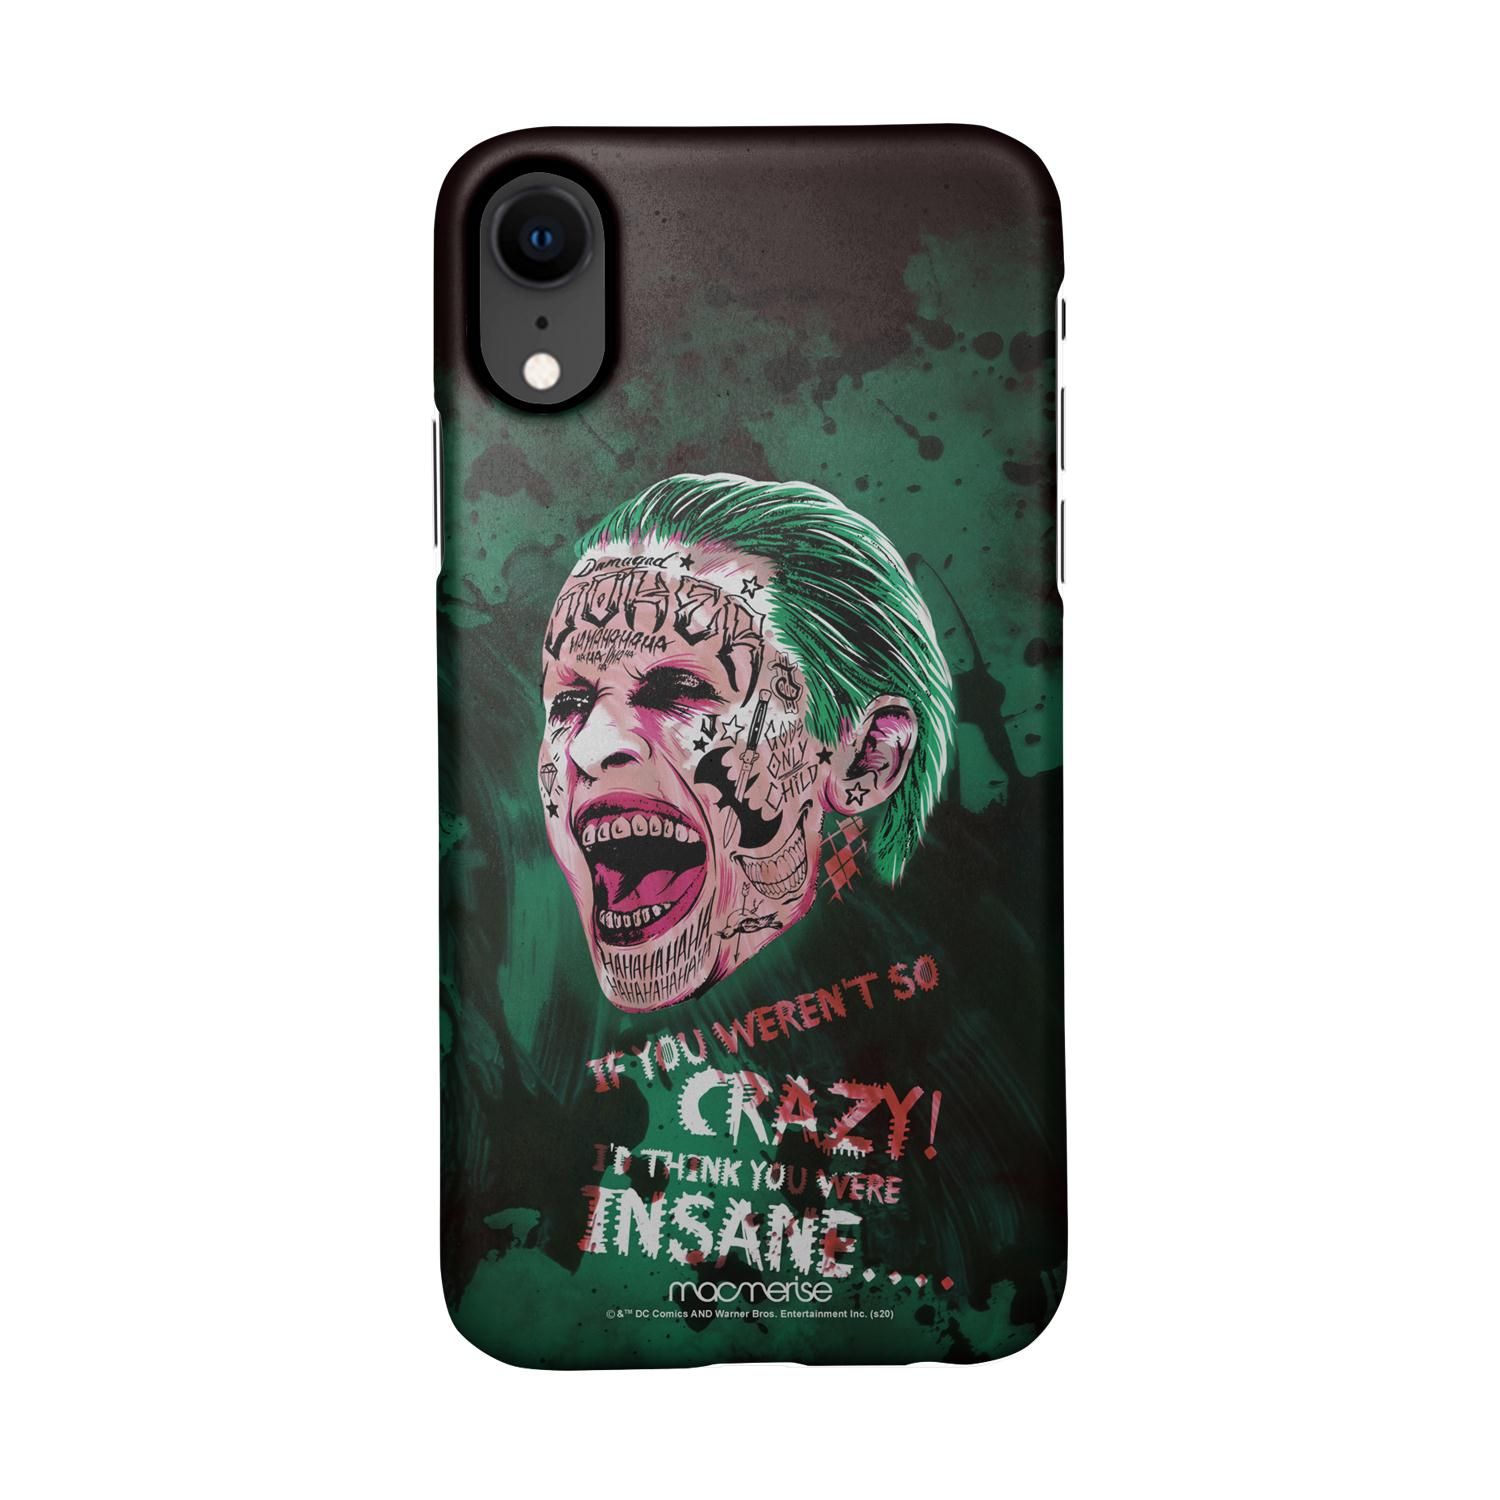 Buy Crazy Insane Joker - Sleek Phone Case for iPhone XR Online